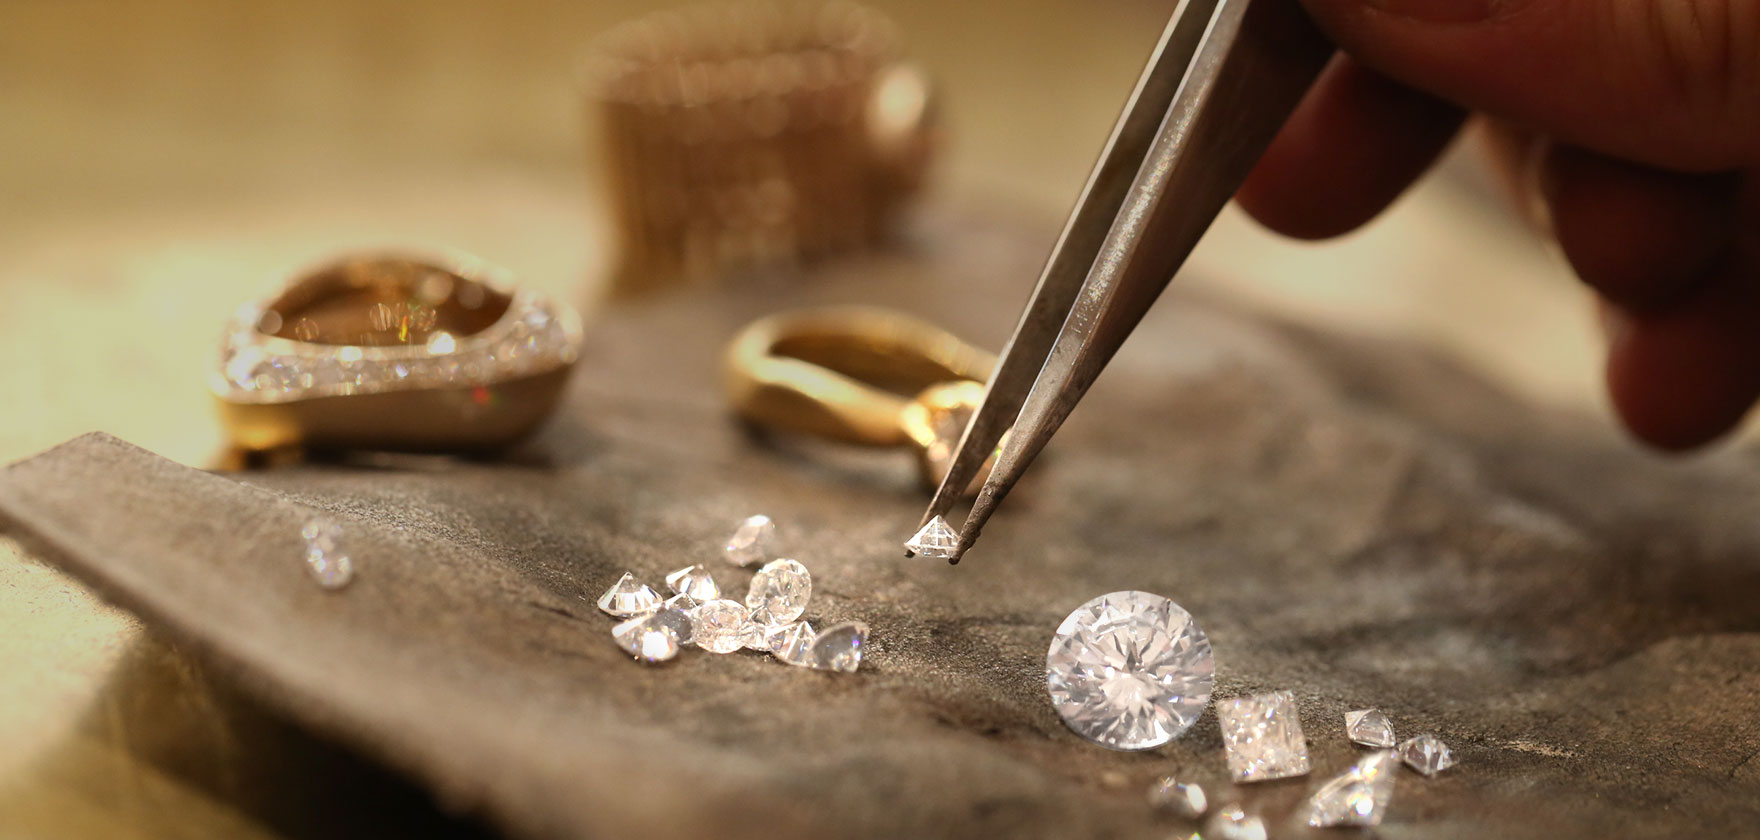 SKREIN* die Schmuckwerkstatt arbeitet nur mit Fairem Gold und konfliktfreien Diamanten.